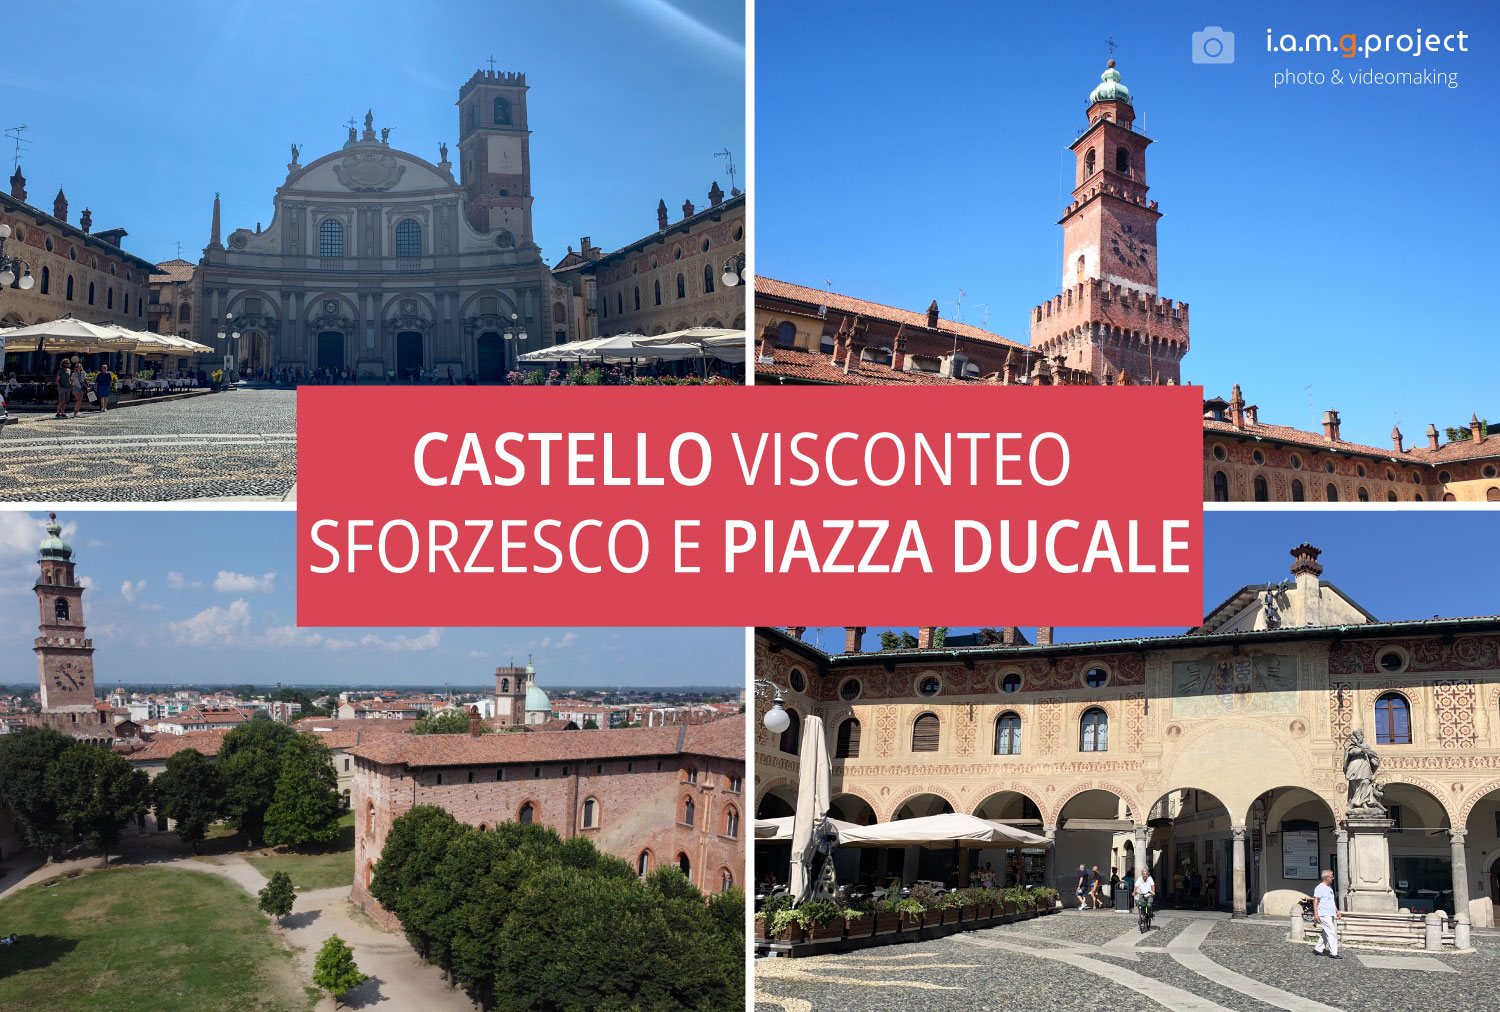 Visconti Sforza Castle - Ducal Plaza